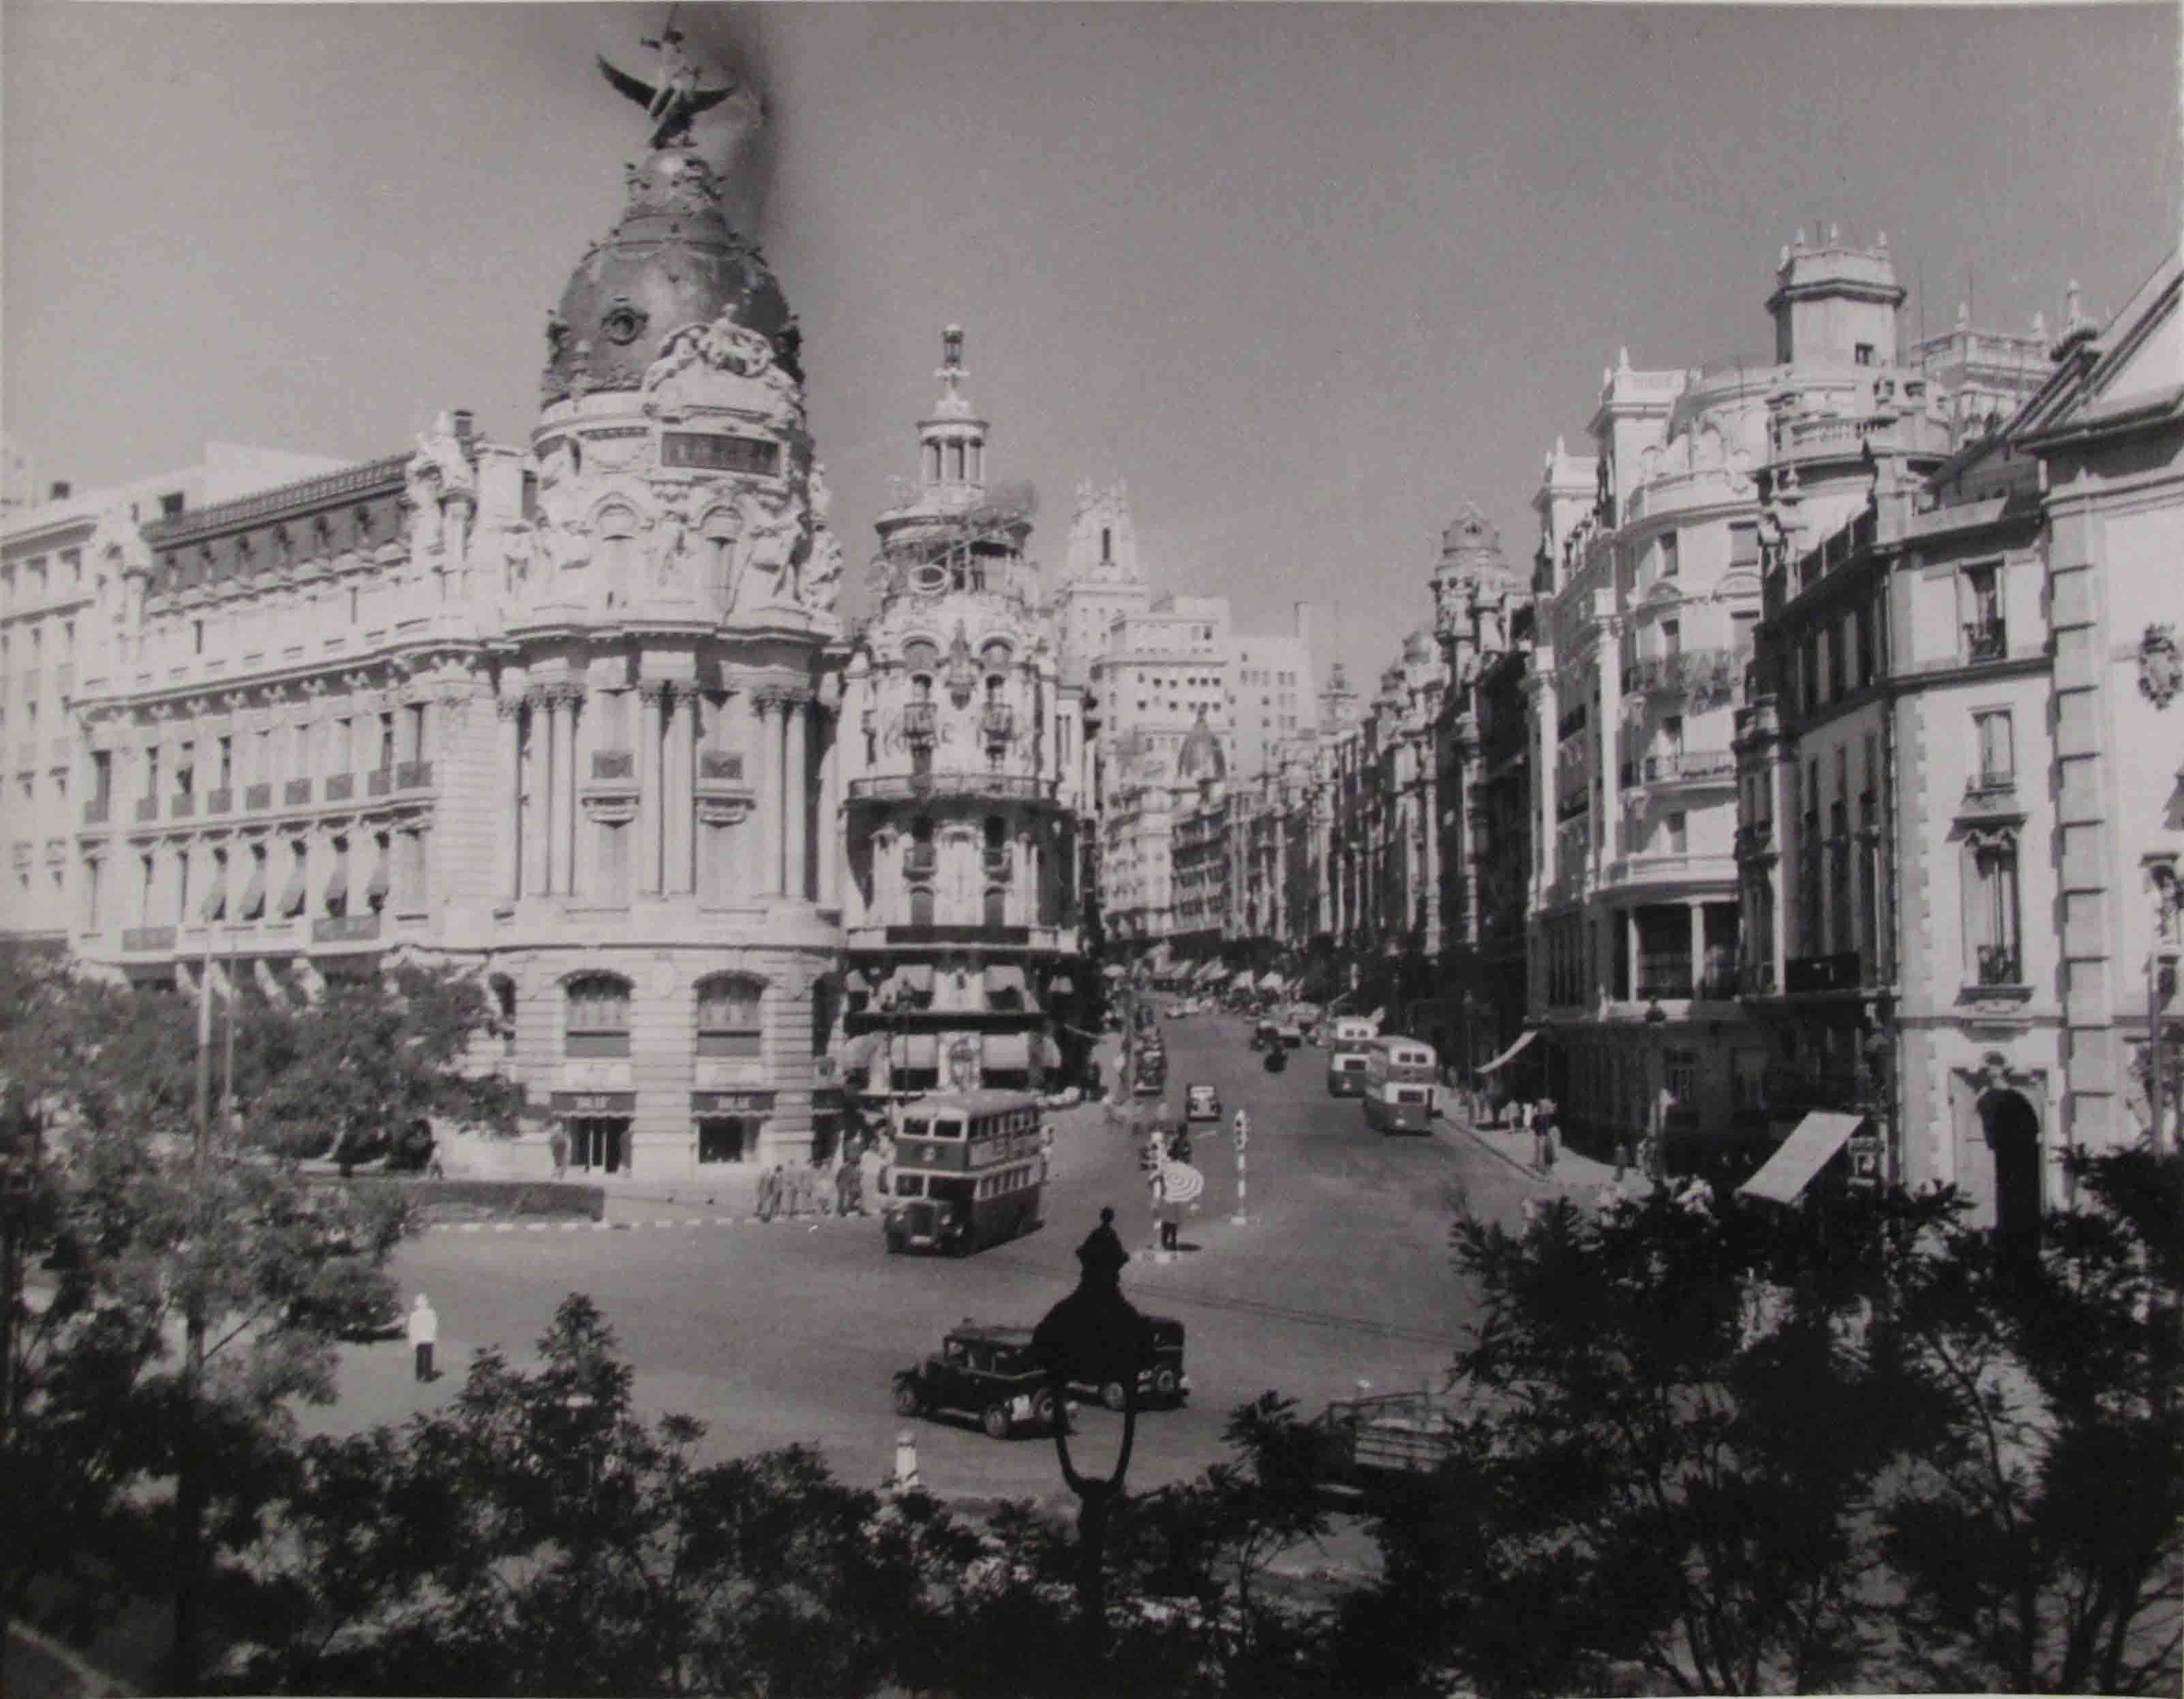 La Gran Vía de Madrid, 1950<br/>Gelatina de plata / Silver gelatin print